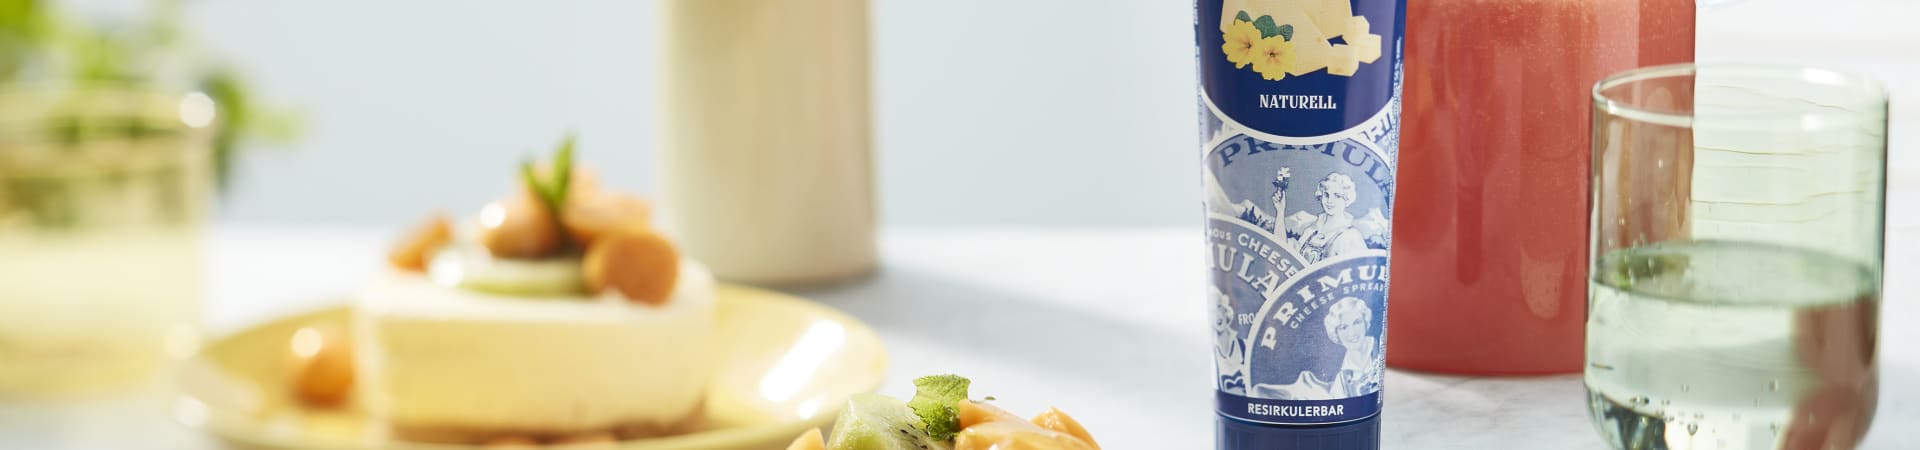 Sitronostekake i porsjoner, toppet med kiwi, physallis-frukt og en frisk, gul saus